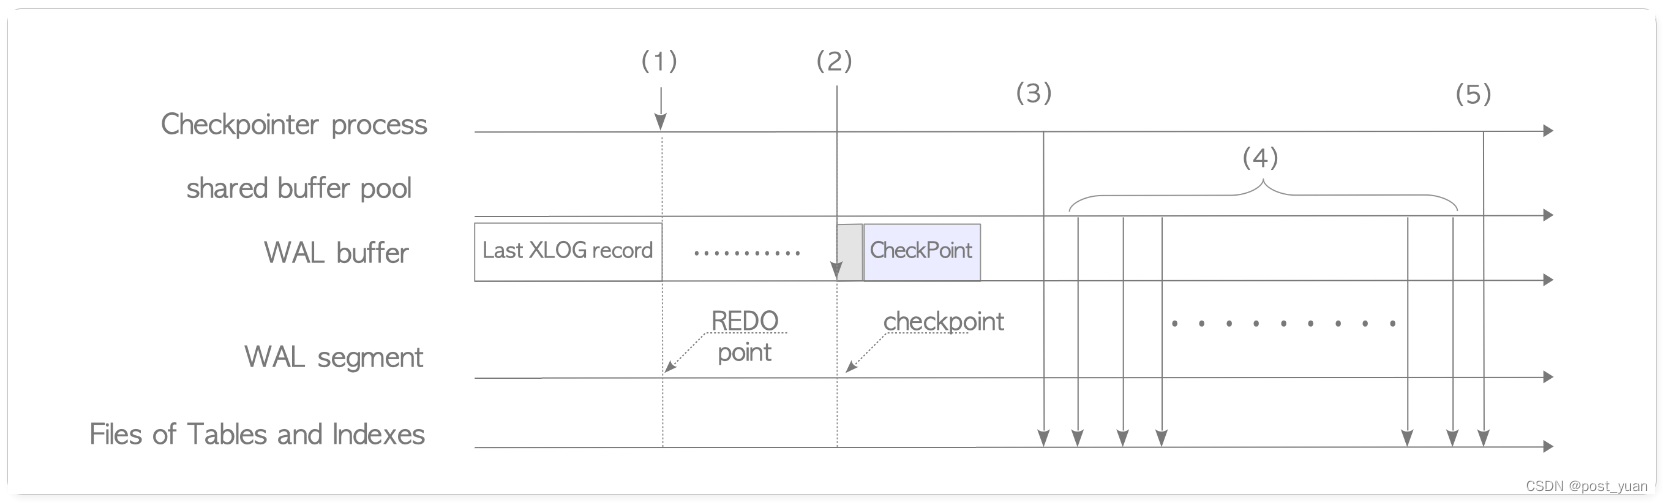 PostgreSQL之Checkpoint检查点进程